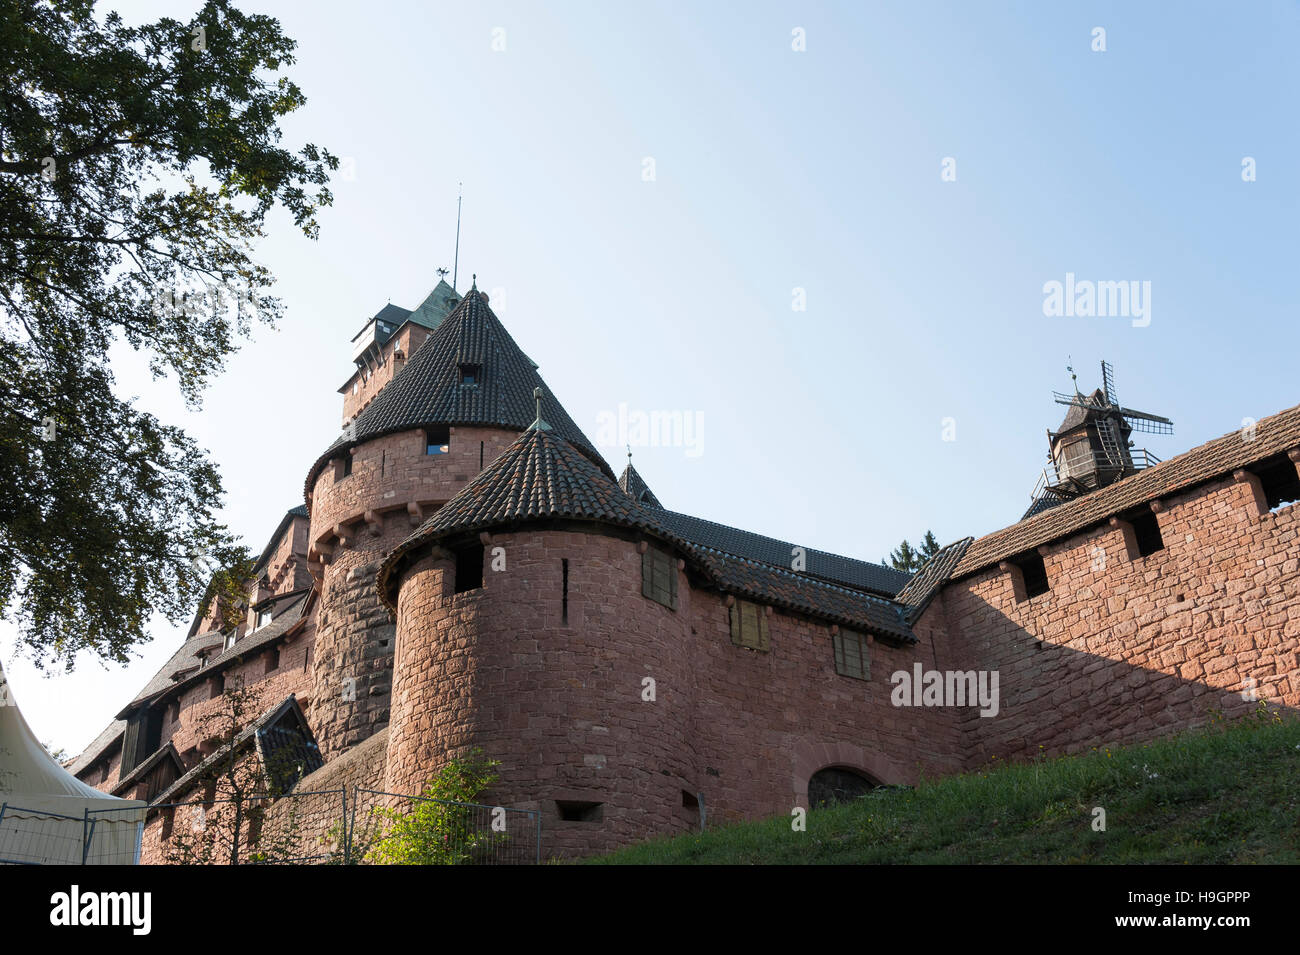 Château du moyen-âge, l'architecture romantique, Alsace, France Banque D'Images